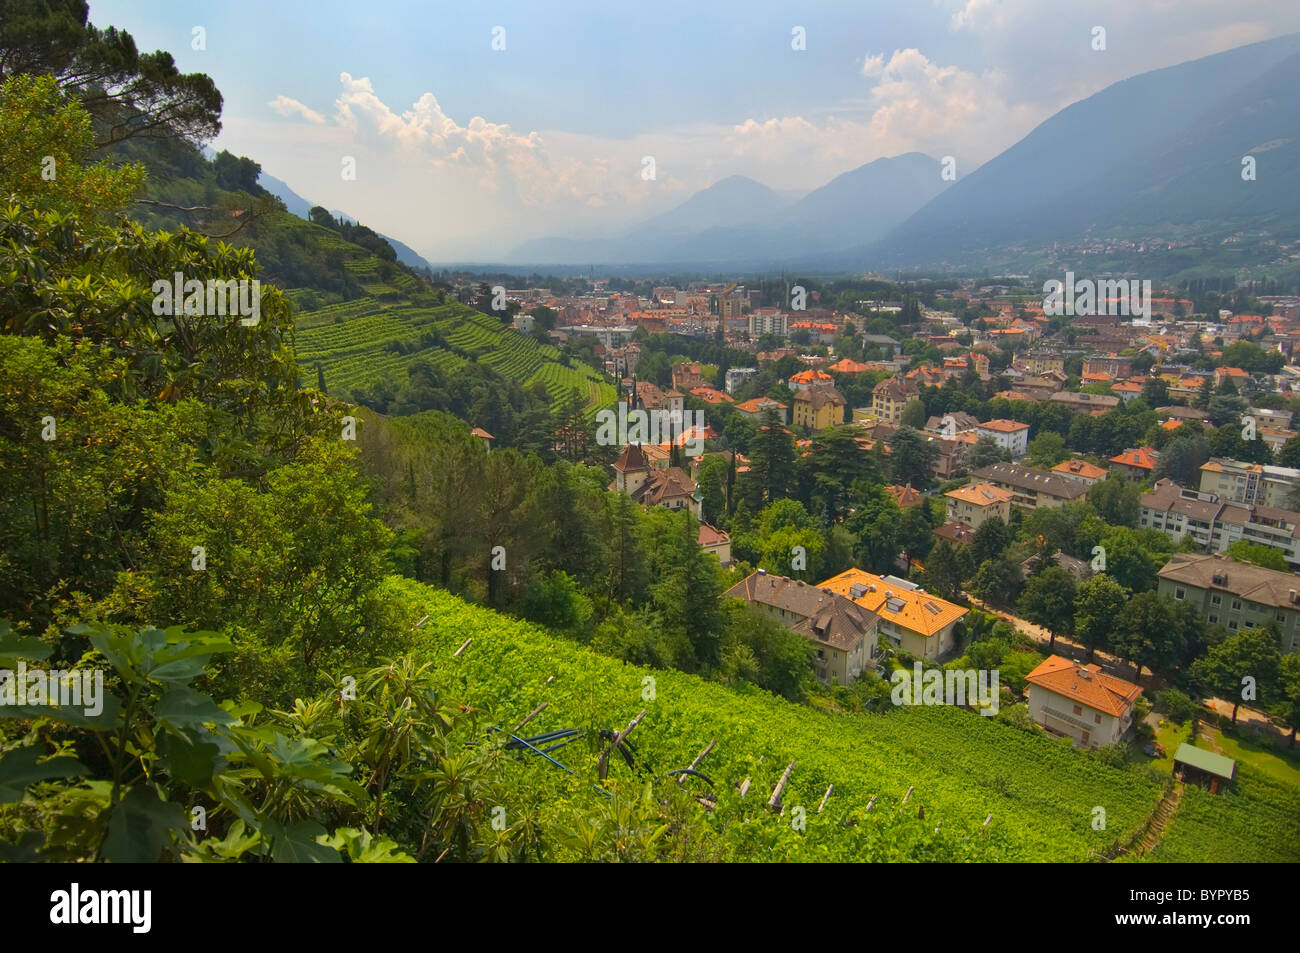 Vista di una città nella valle vicino a Merano e vigneti terrazzati; trentino alto-adige, italia Foto Stock